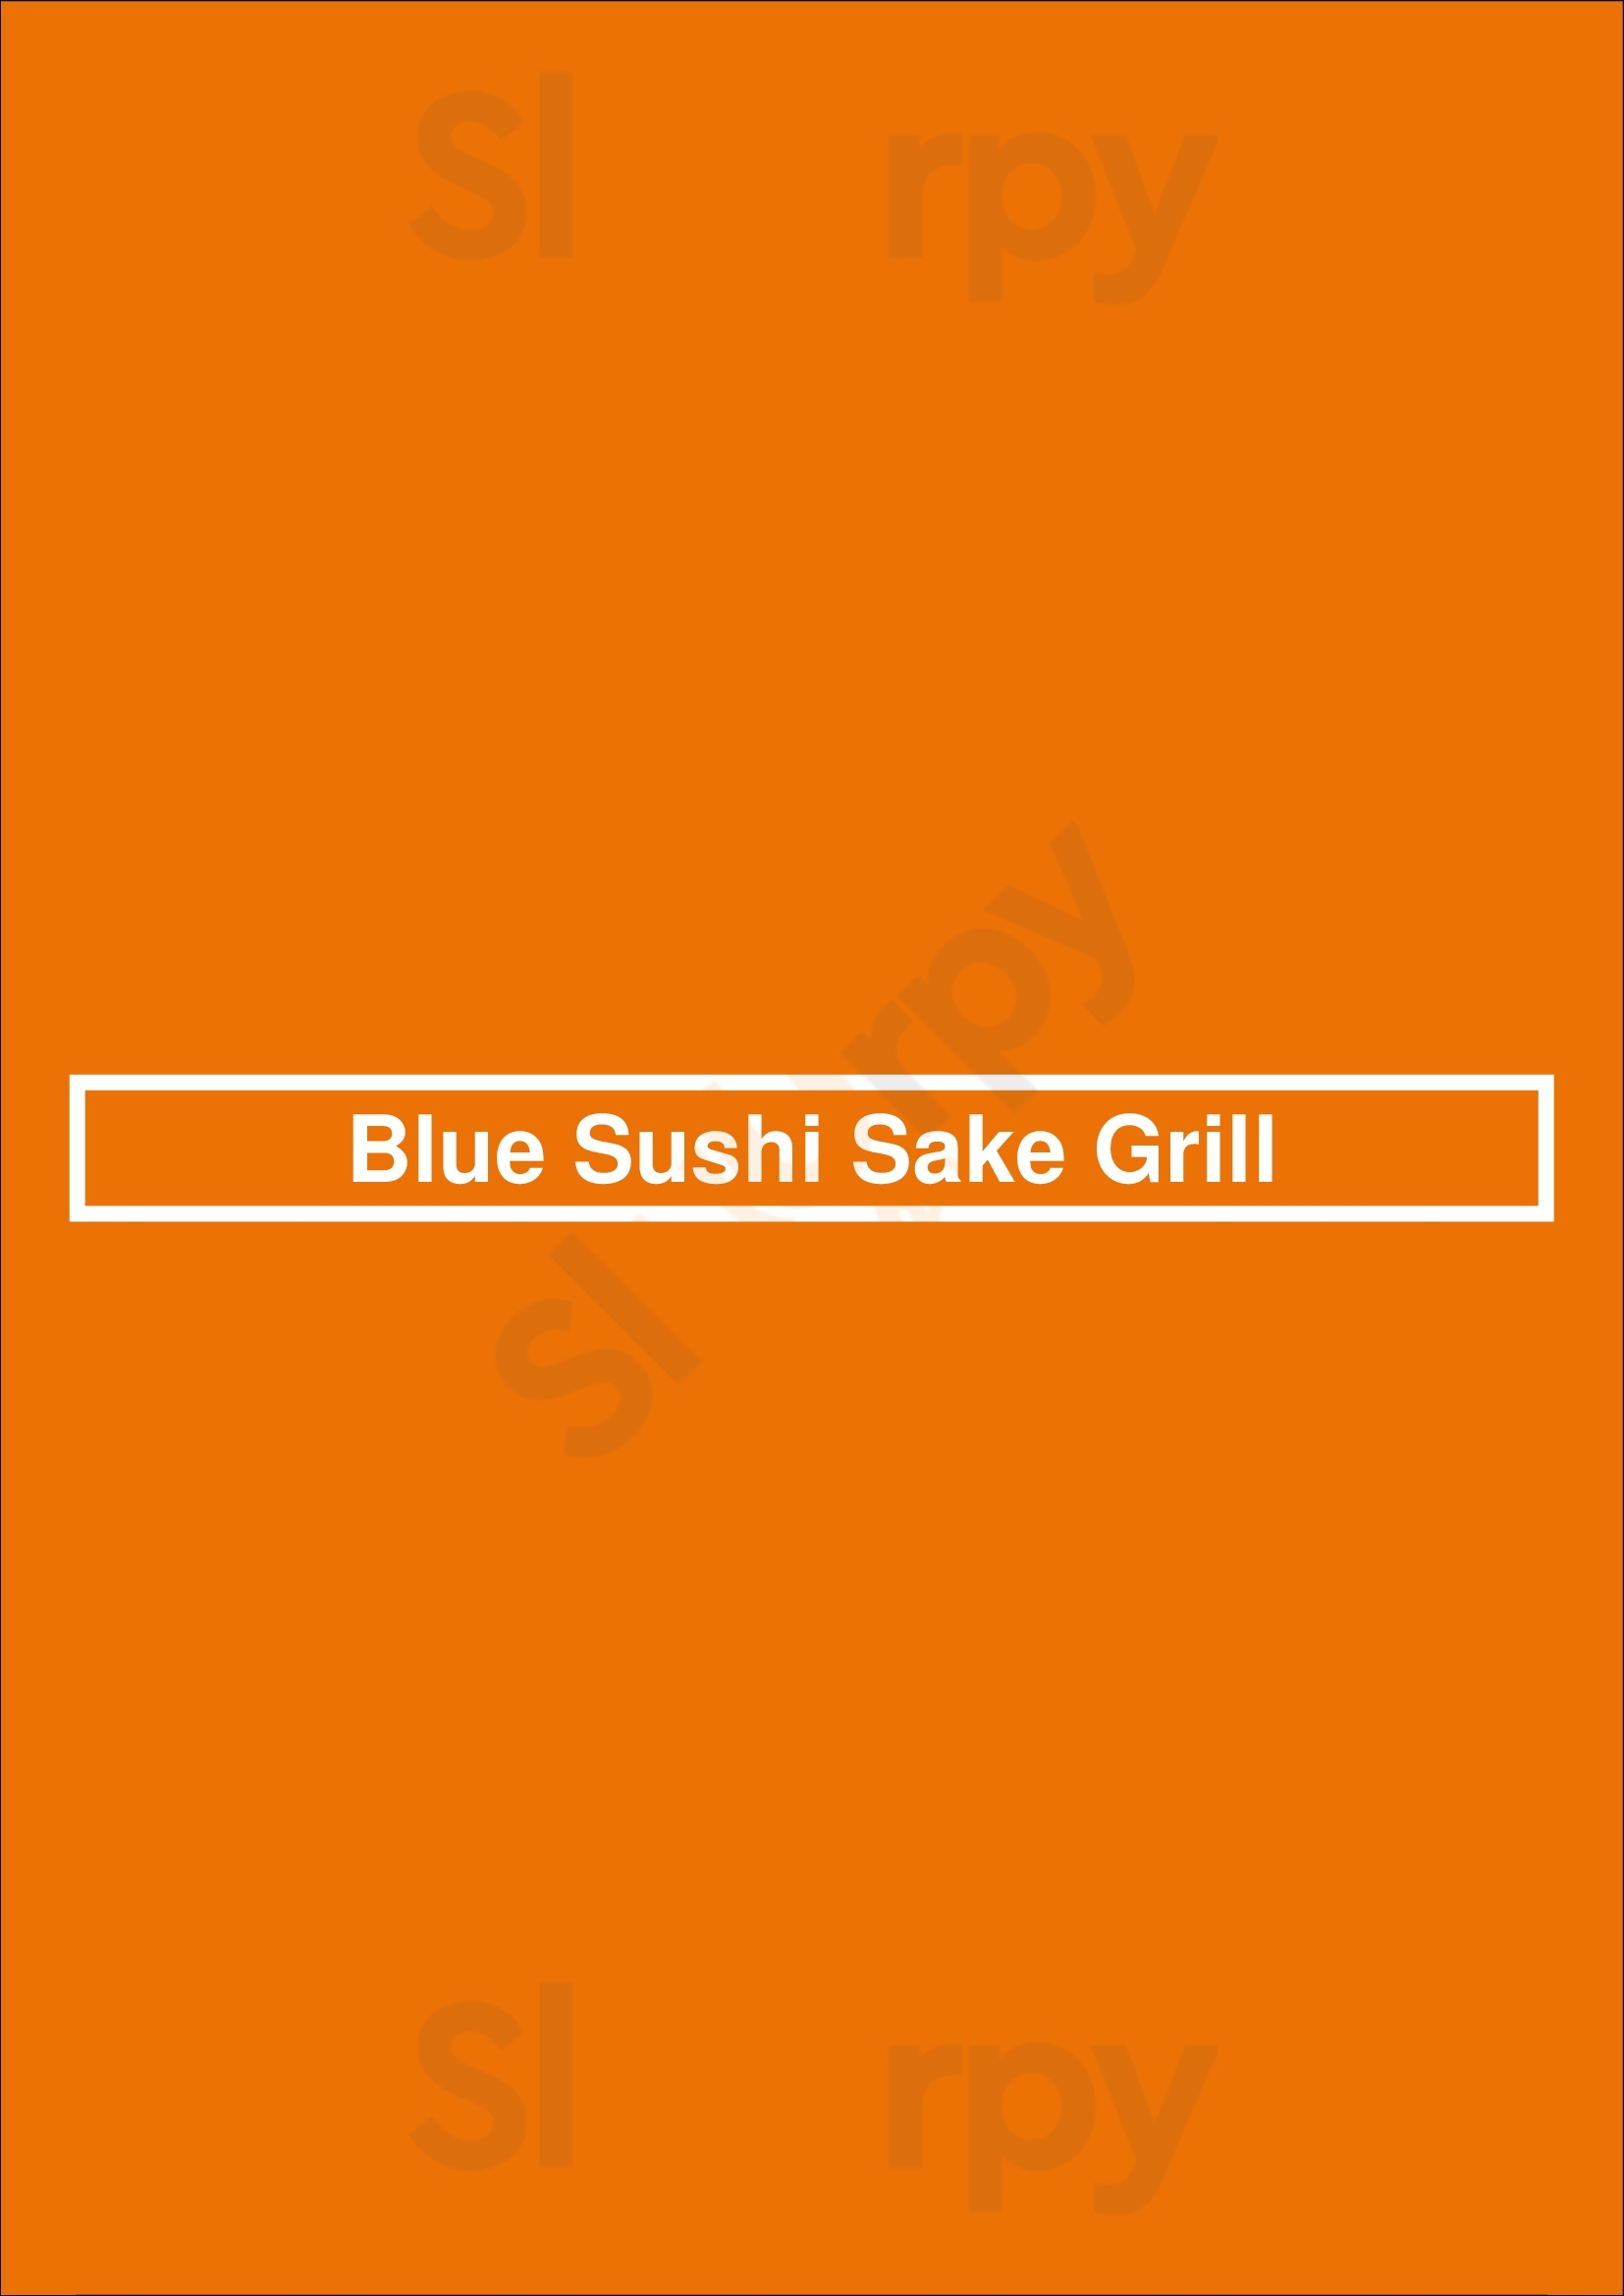 Blue Sushi Sake Grill Indianapolis Menu - 1